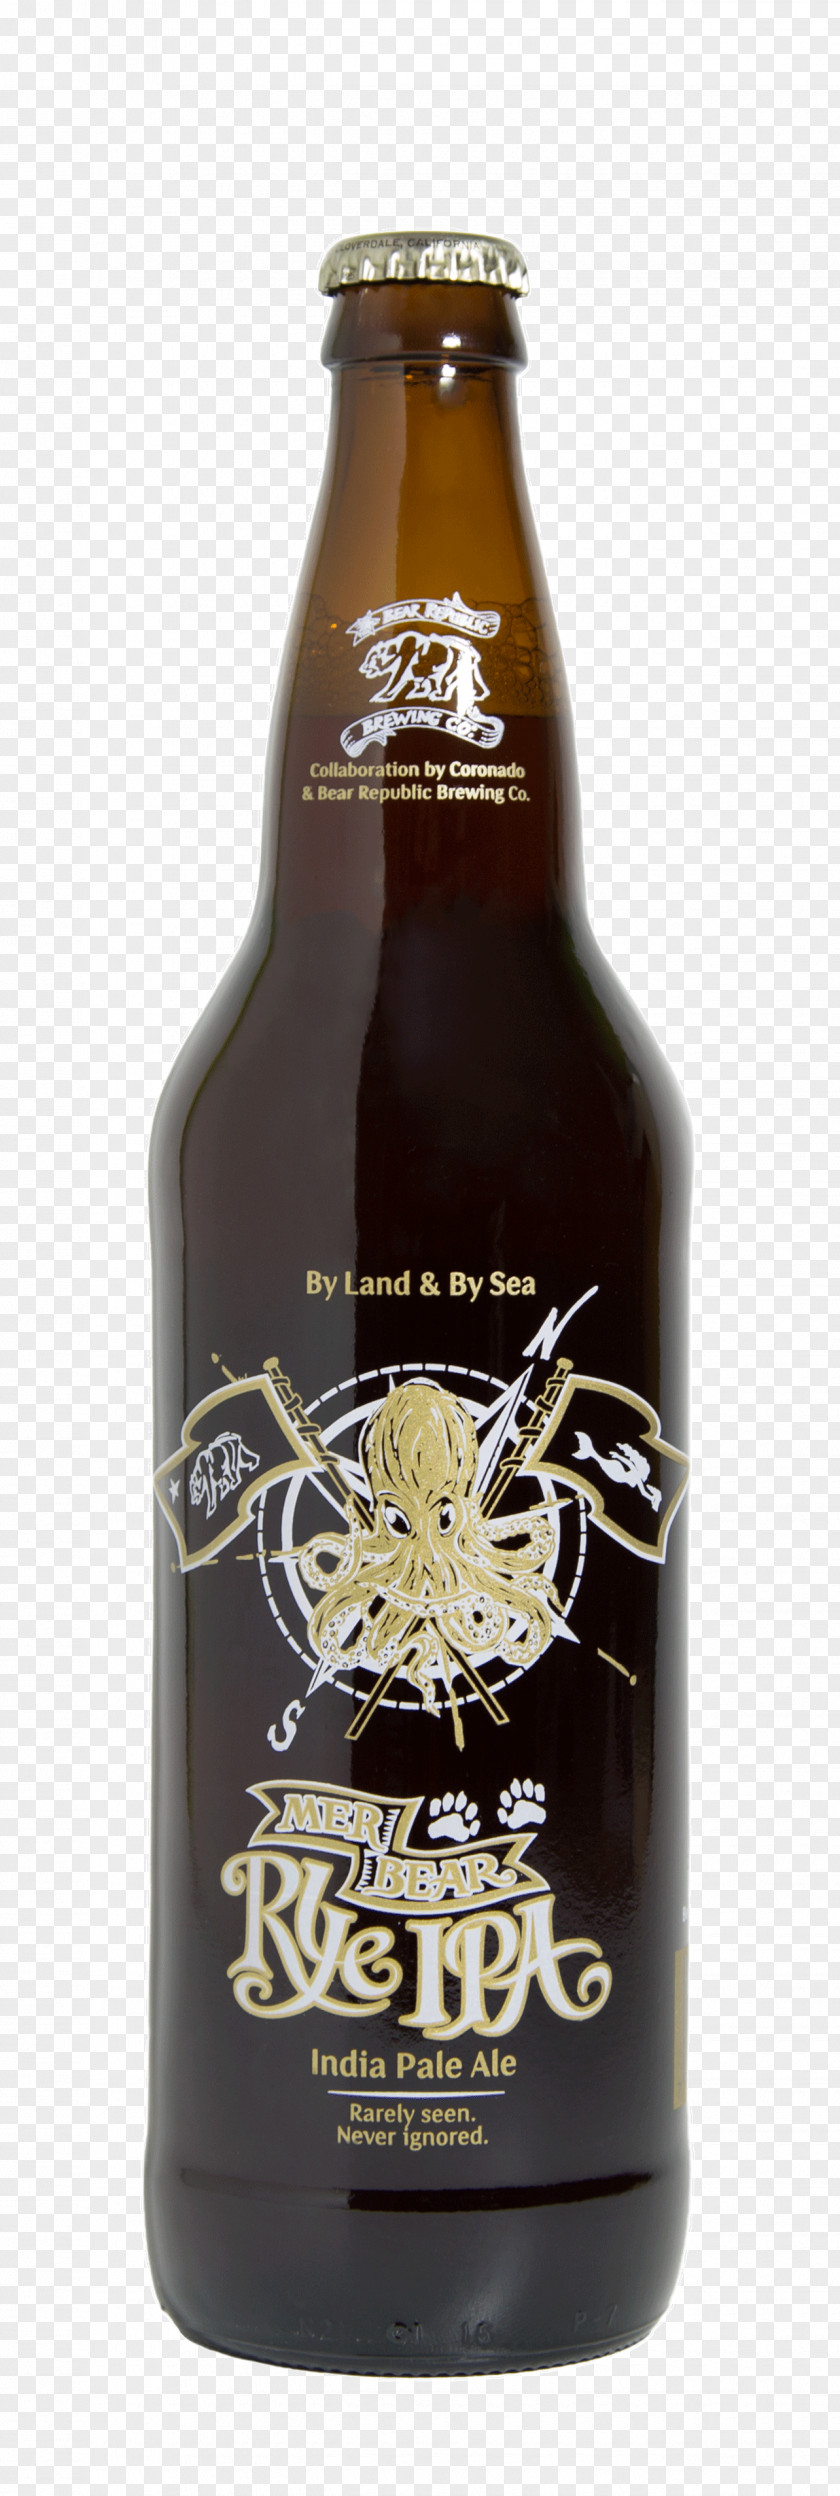 Beer Ale Bottle Stout RateBeer.com PNG